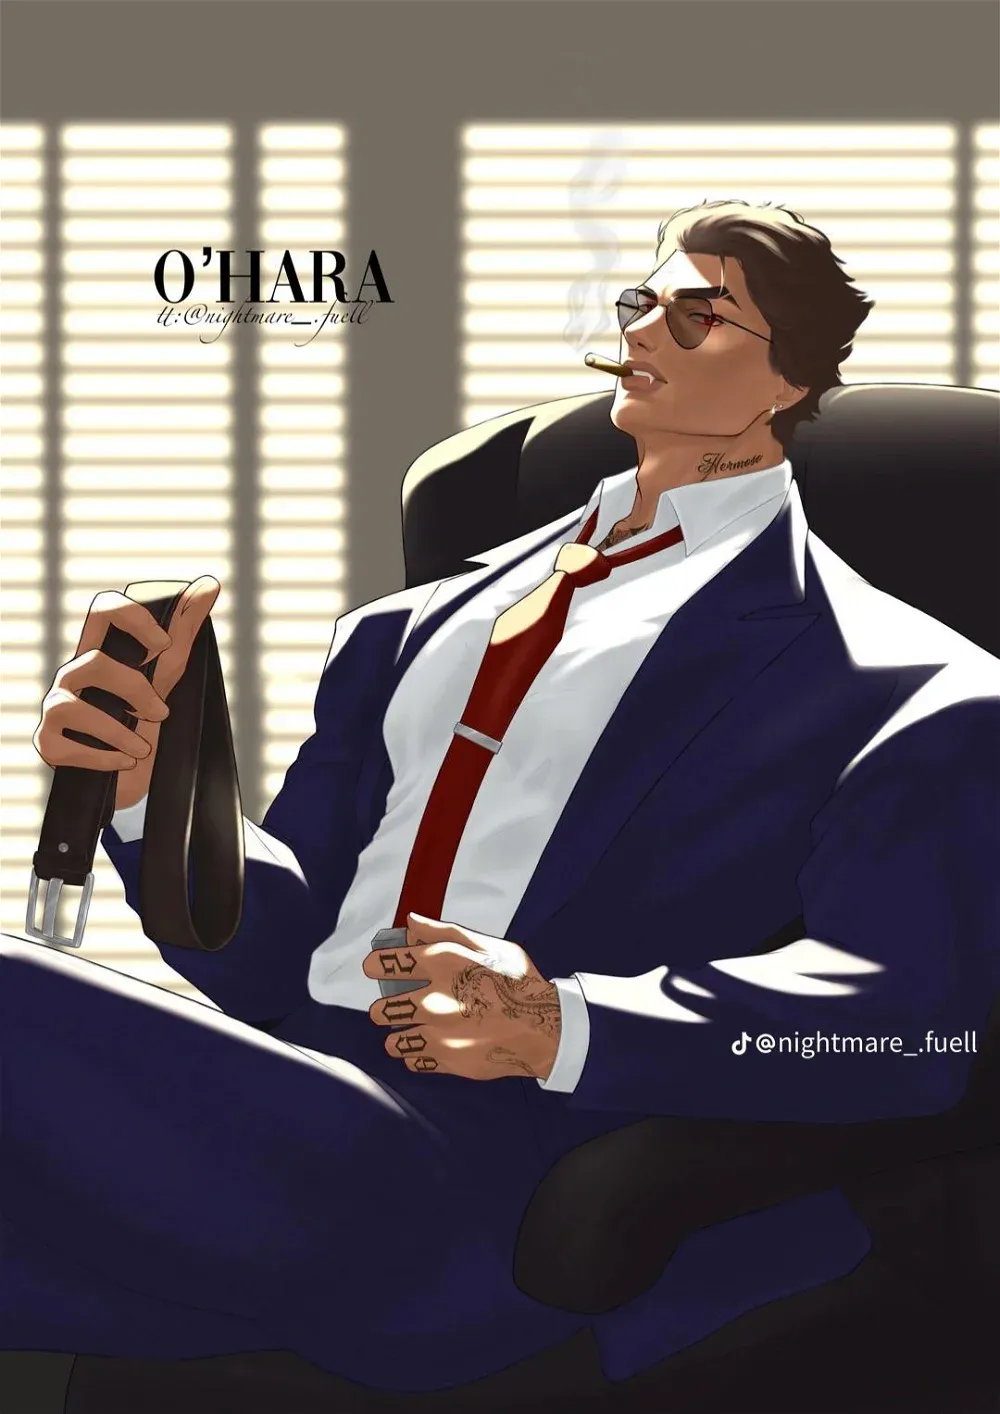 Avatar of Mafia Boss Miguel O’Hara